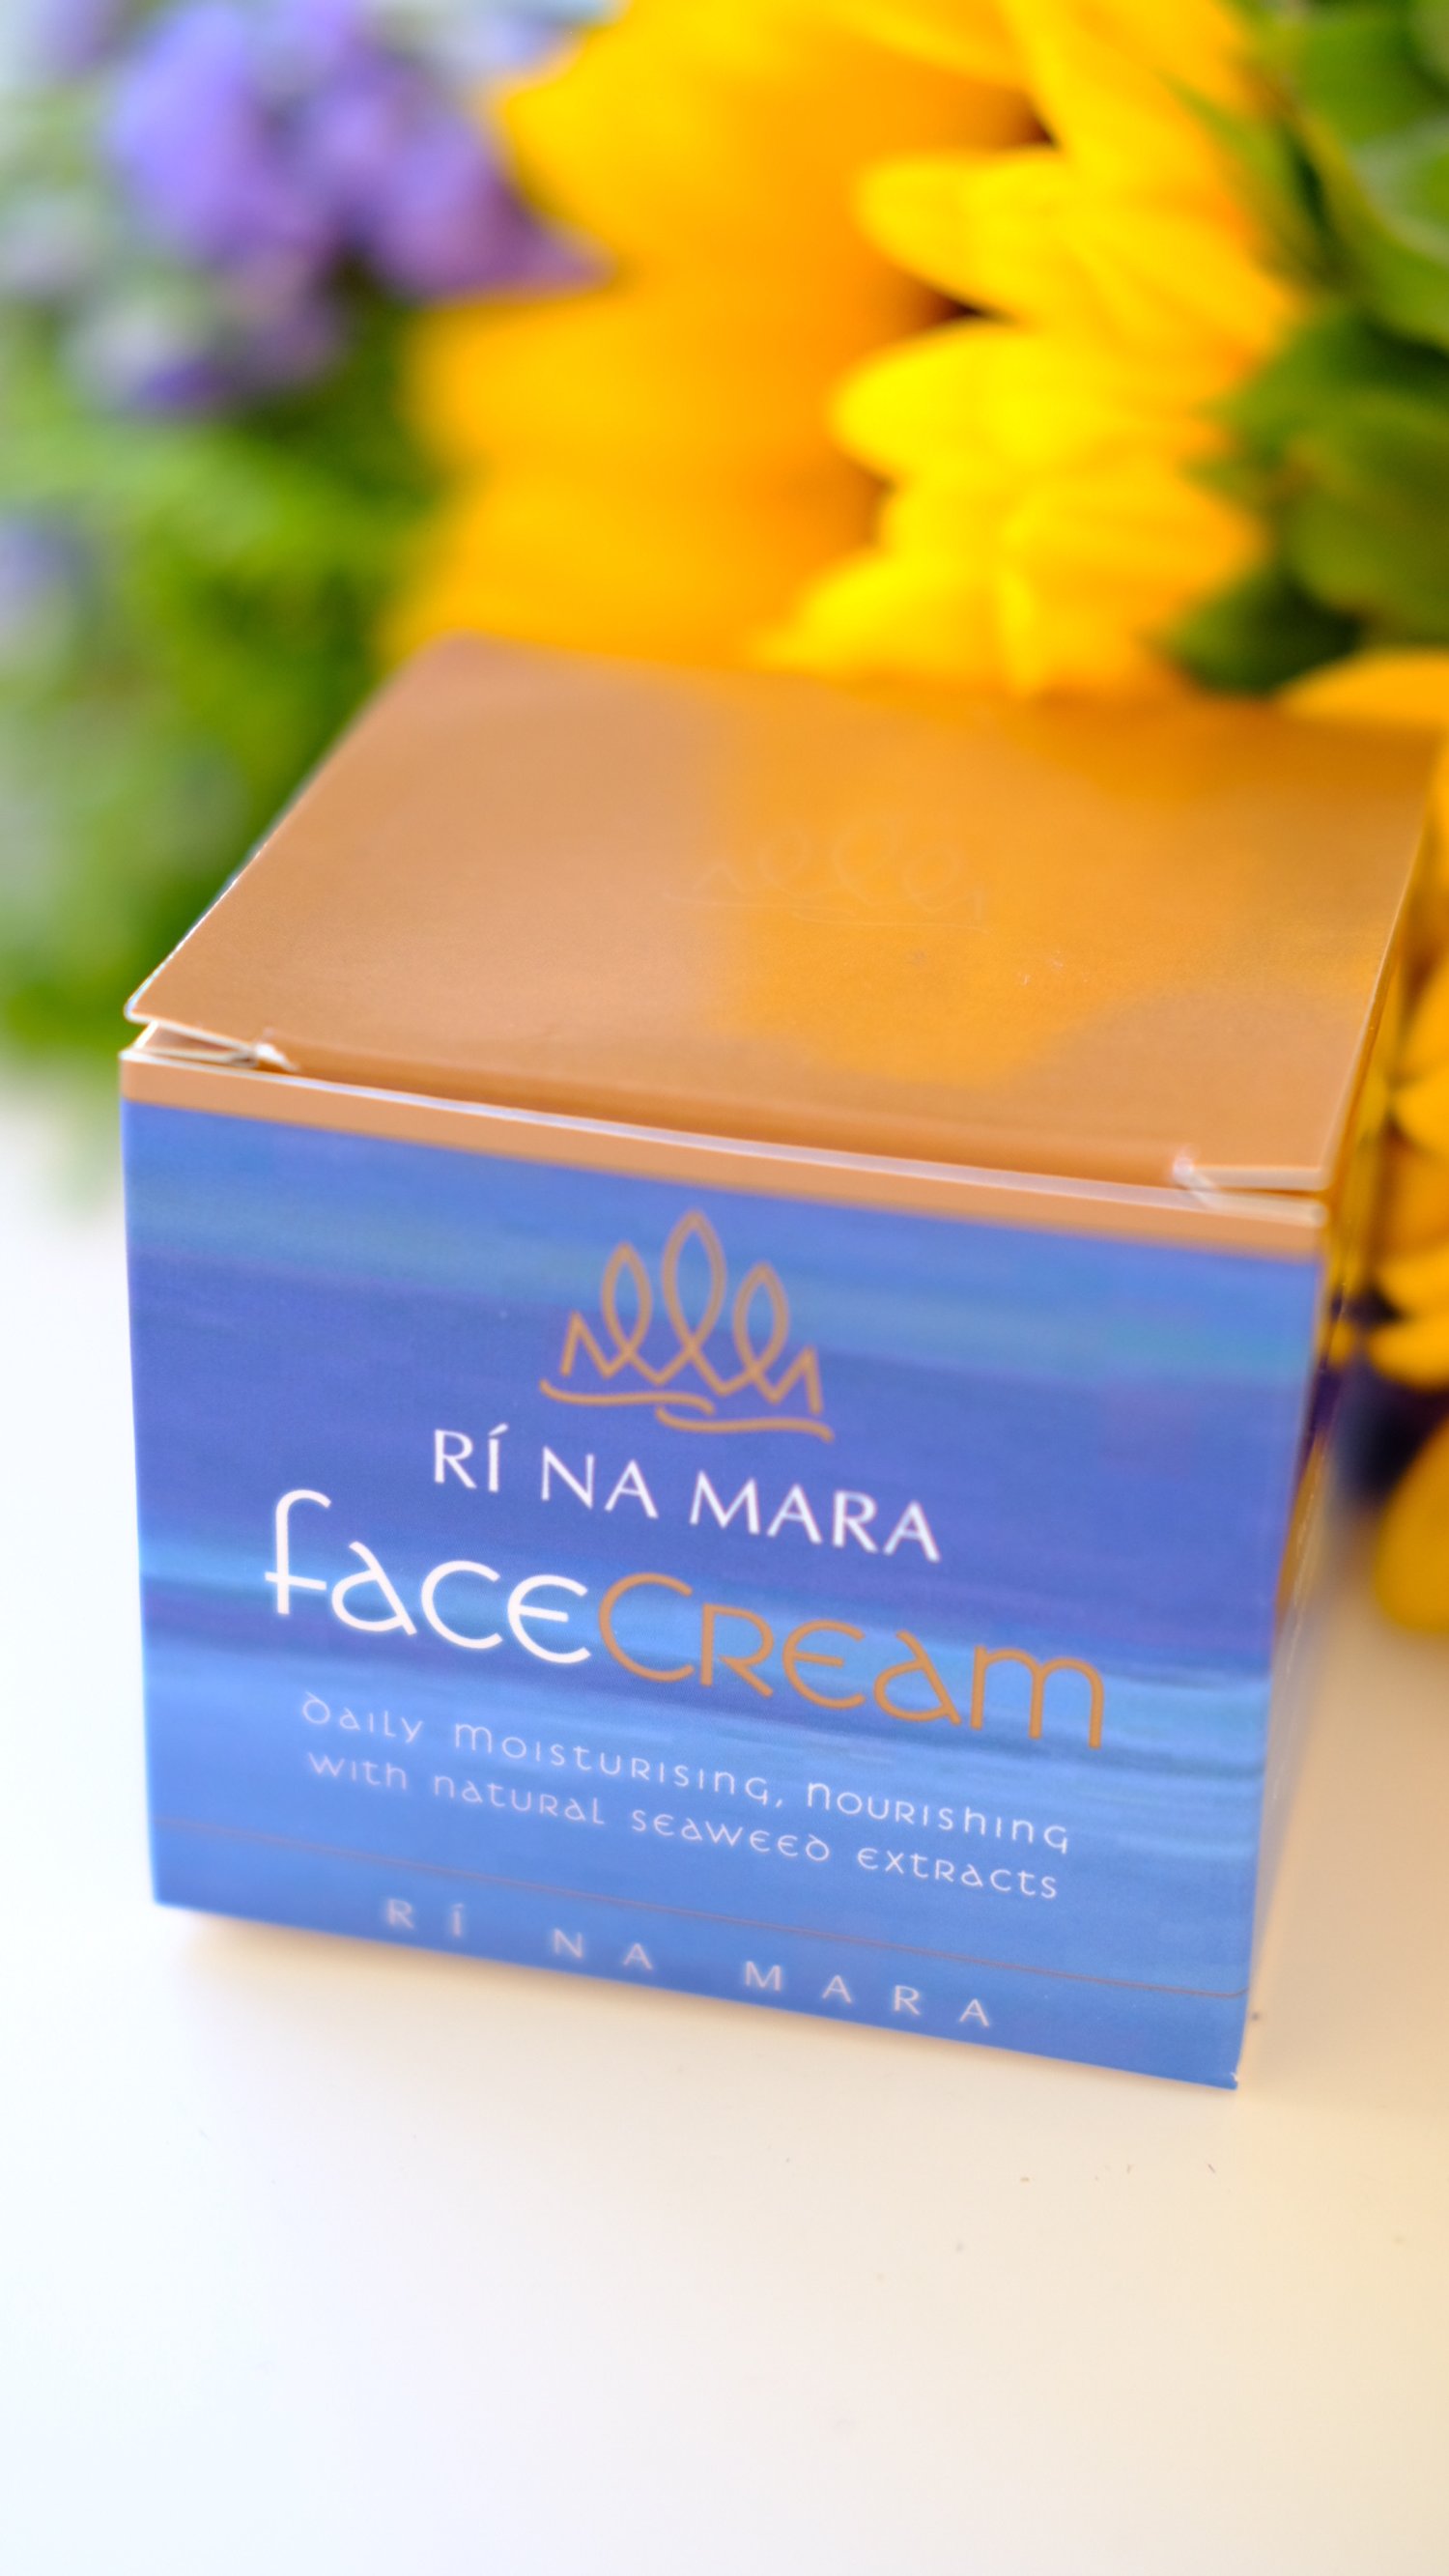 Ri na Mara face cream review and Ri na Mara Coupon code